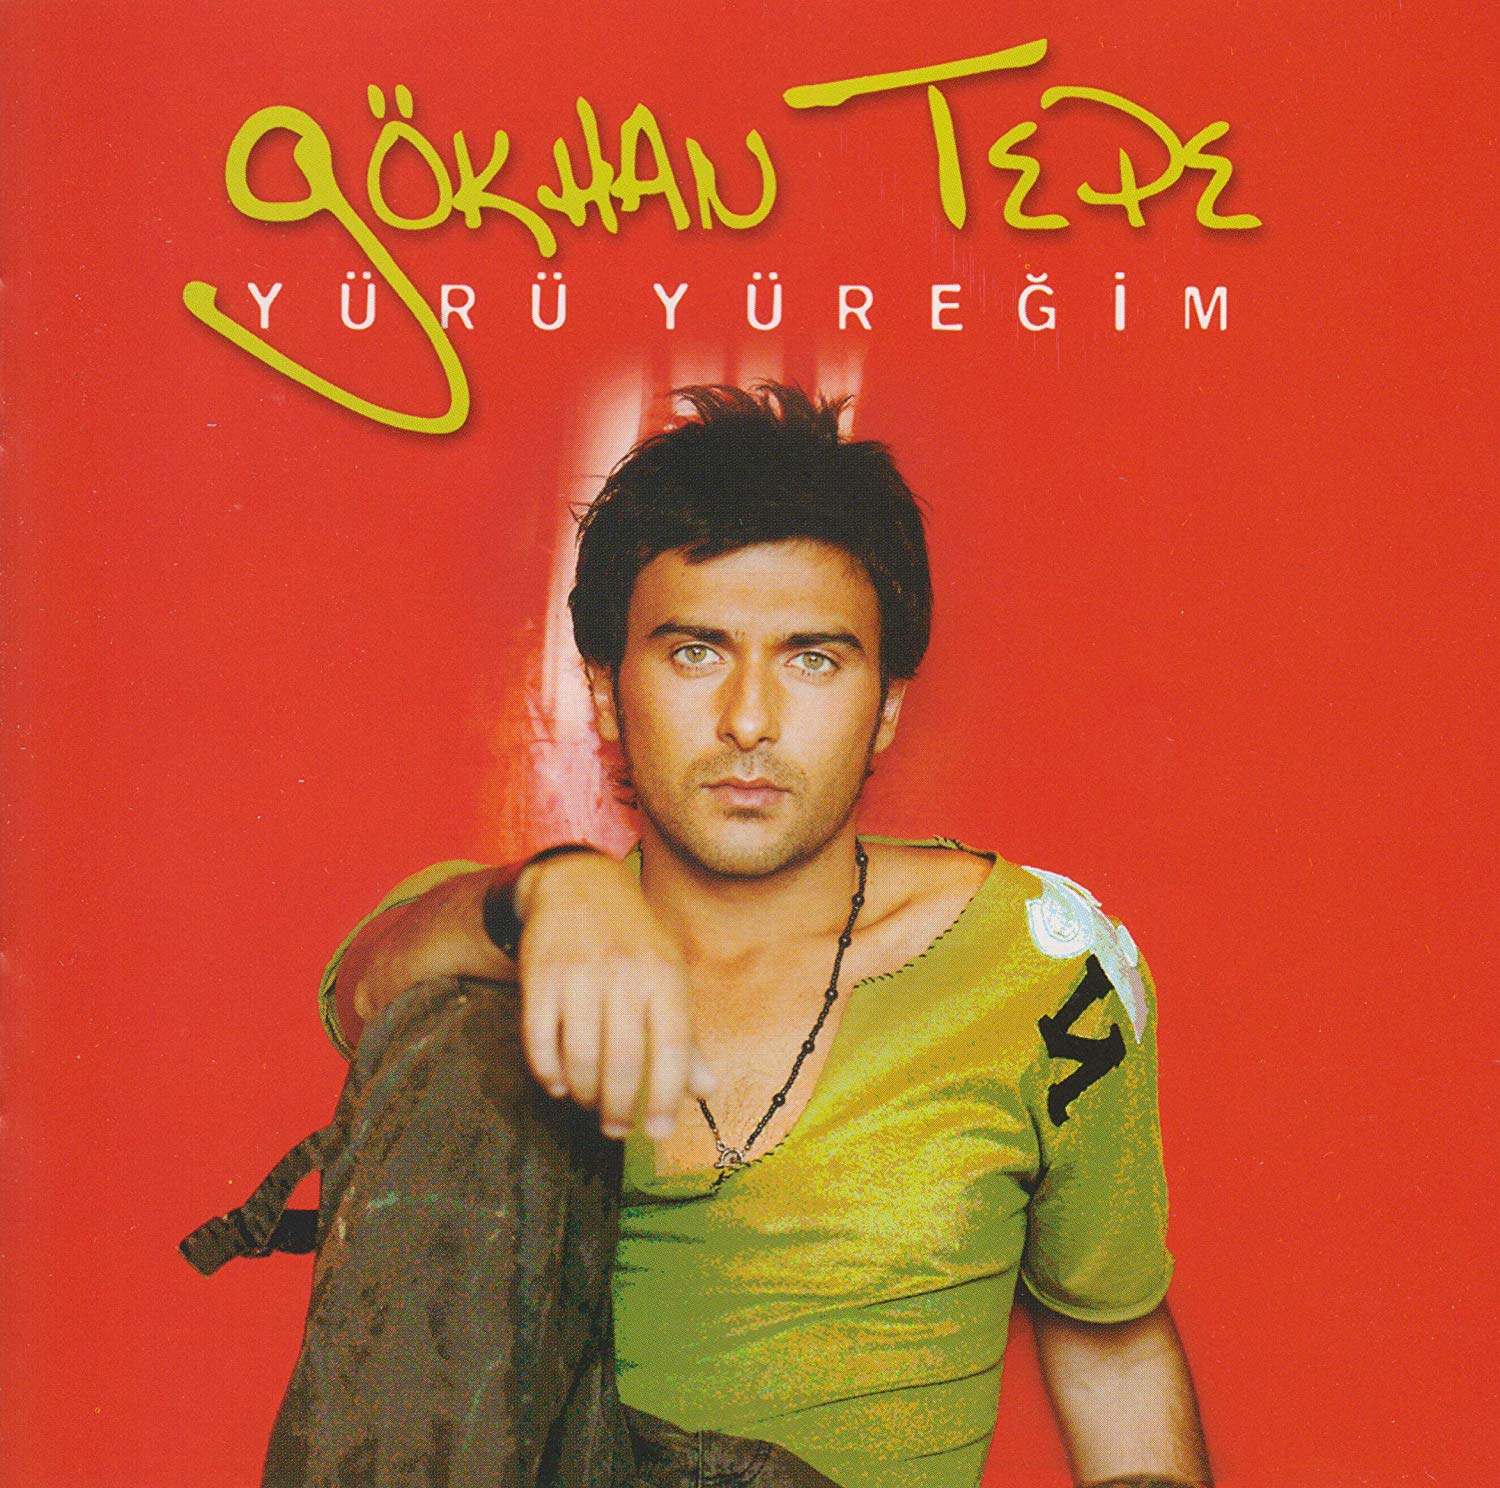 دانلود آلبوم زیبا و شنیدنی از Gokhan Tepe بنام Yuru Yuregim